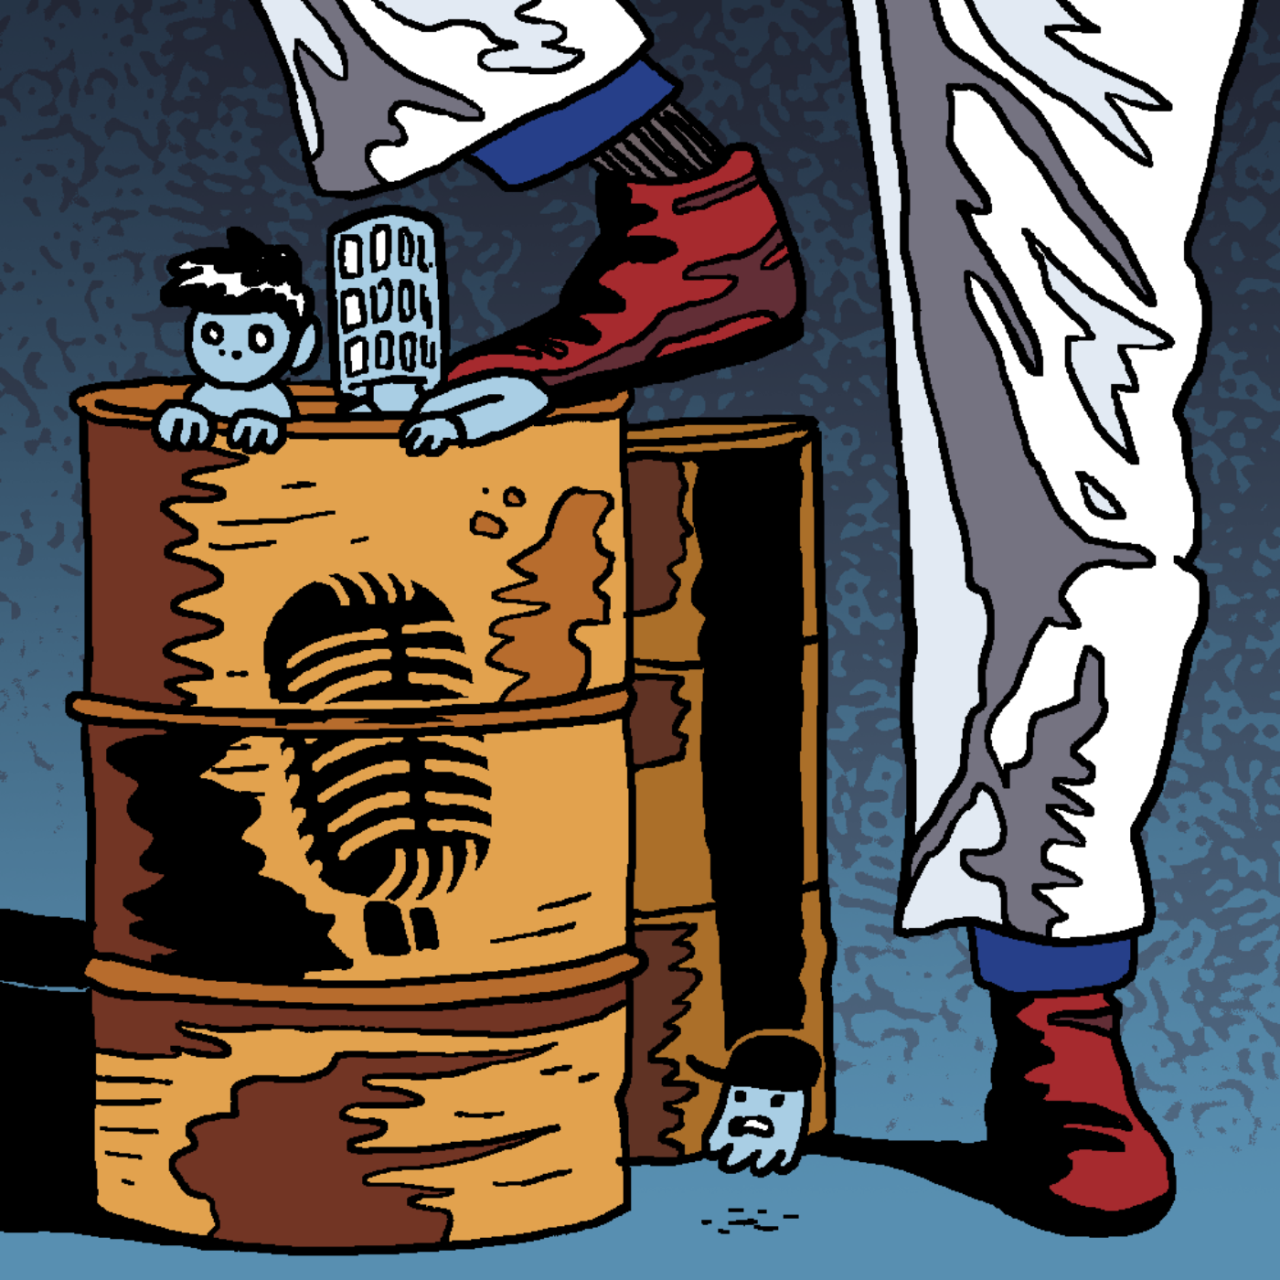 Eine selbst gezeichnete Version des Original-Covers von Folge 48 "Die gefährlichen Fässer". Marcus, Tim und Jeff sitzen als kleine Figuren in einem alten Ölfass, auf dem das abgestützte Bein einer Person in weißer Hose steht.